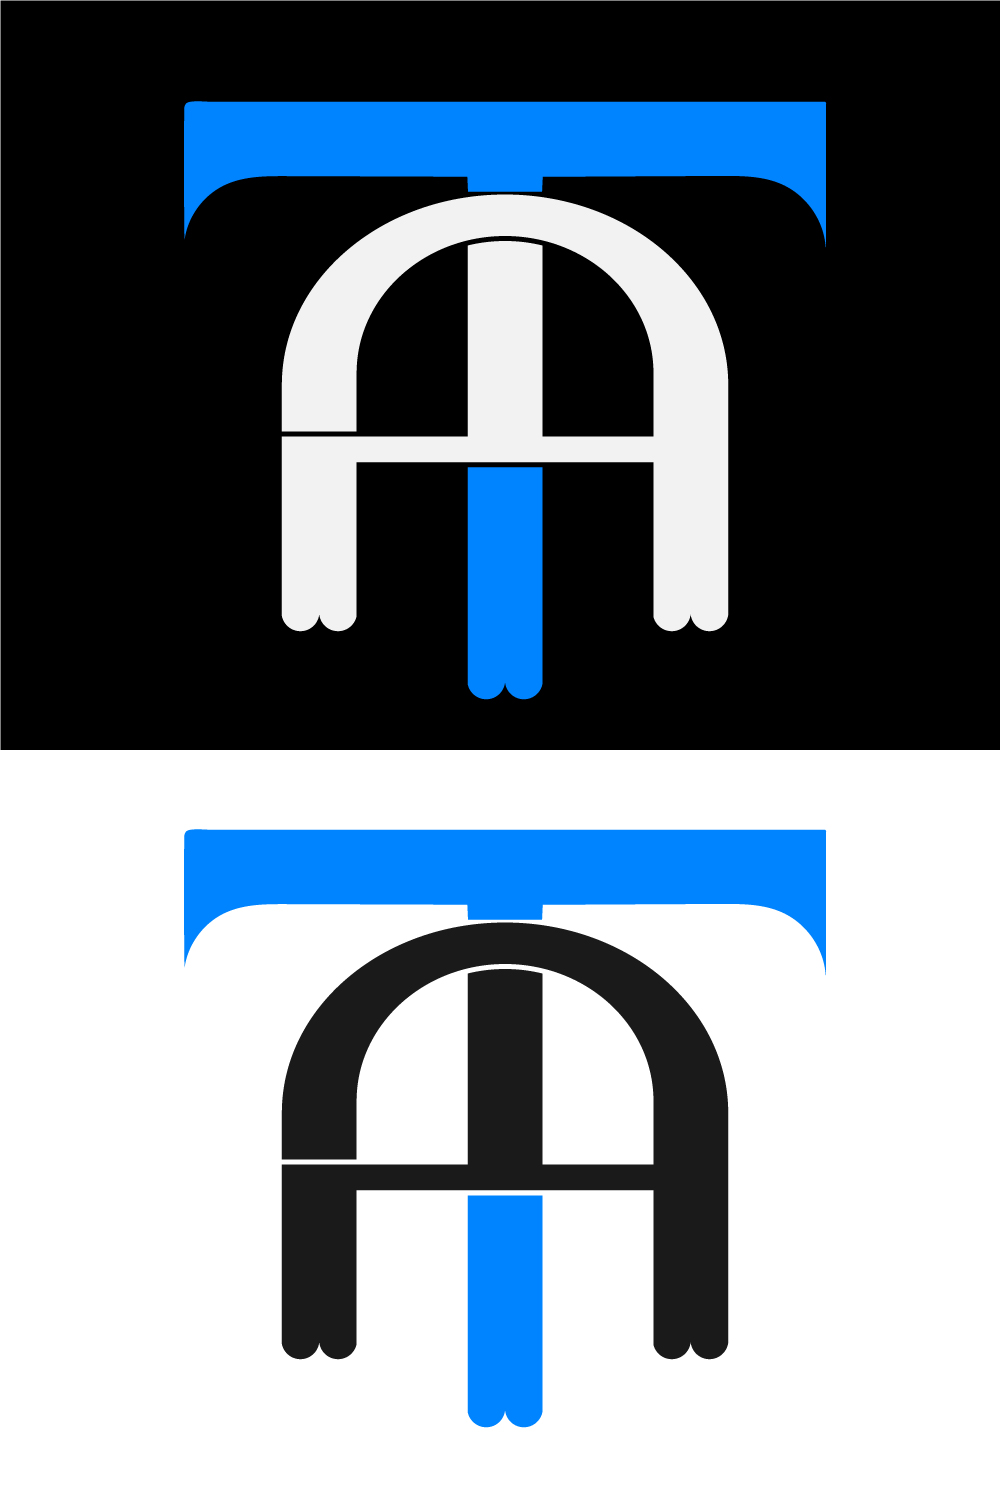 AT Monogram Letter Logo Template pinterest image.